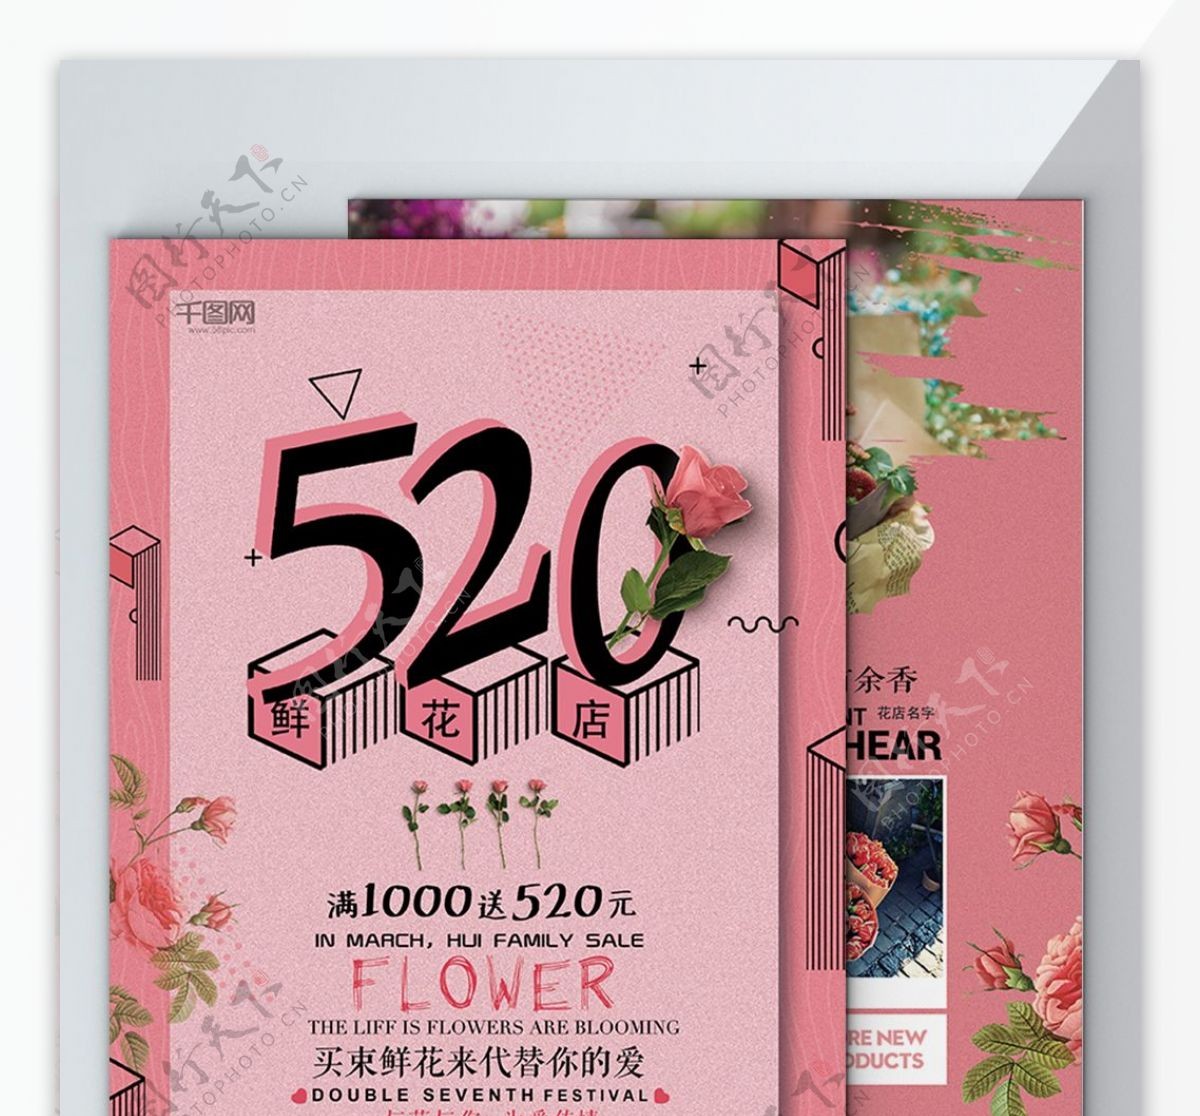 520鲜花店DM传单